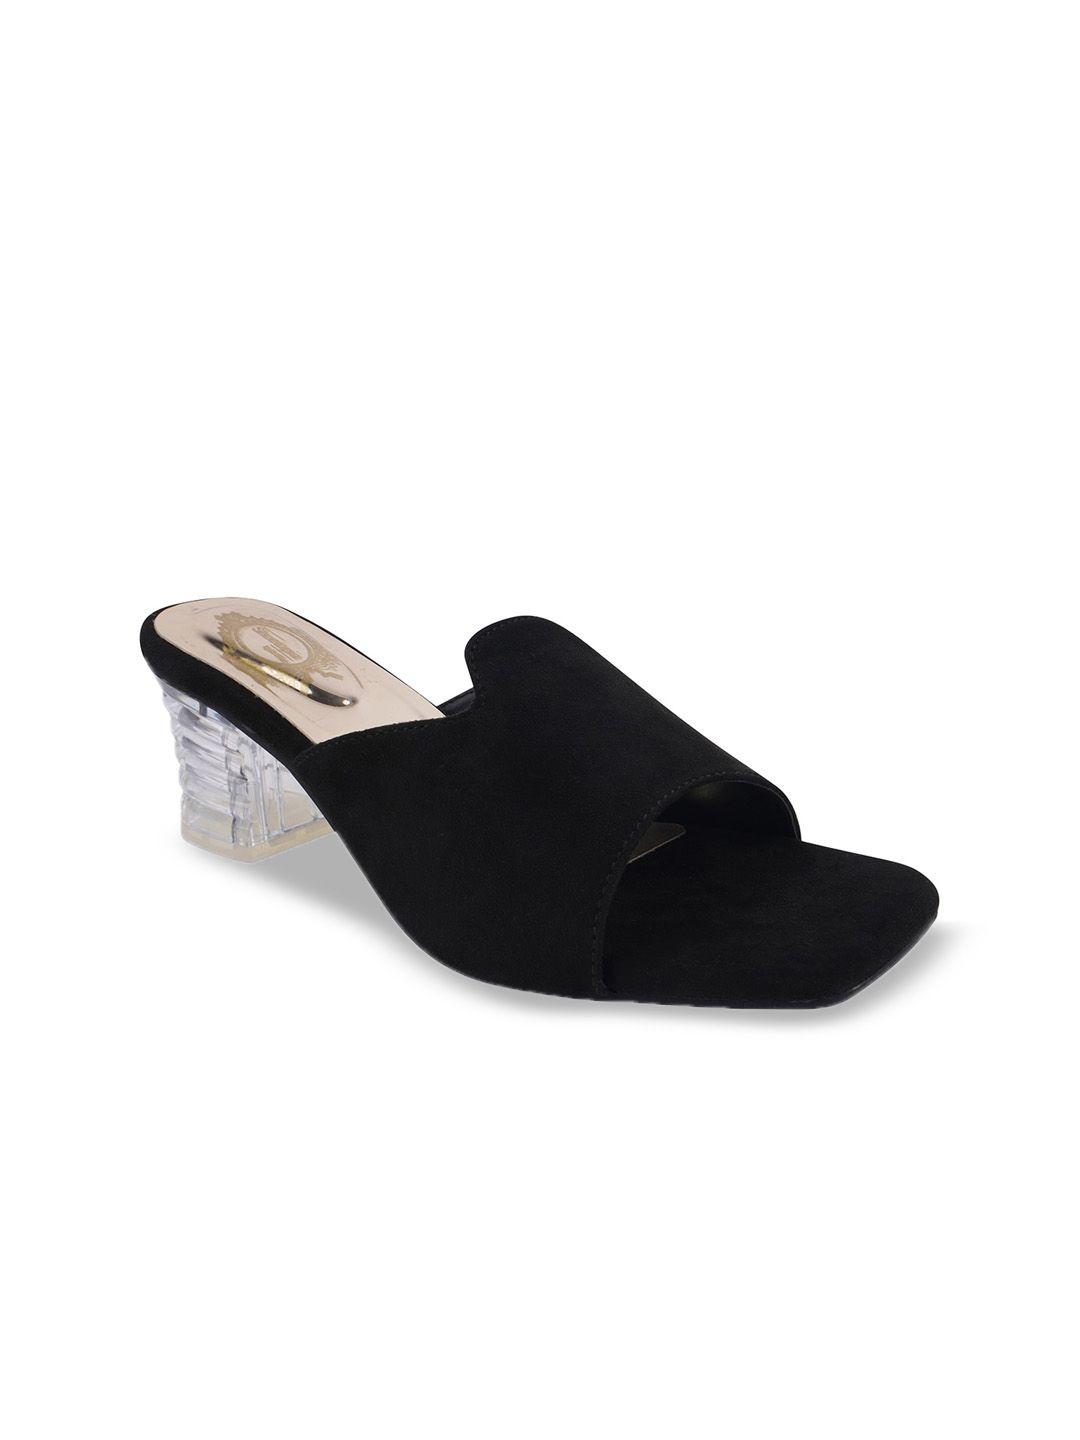 shoetopia girls black embellished suede block peep toes